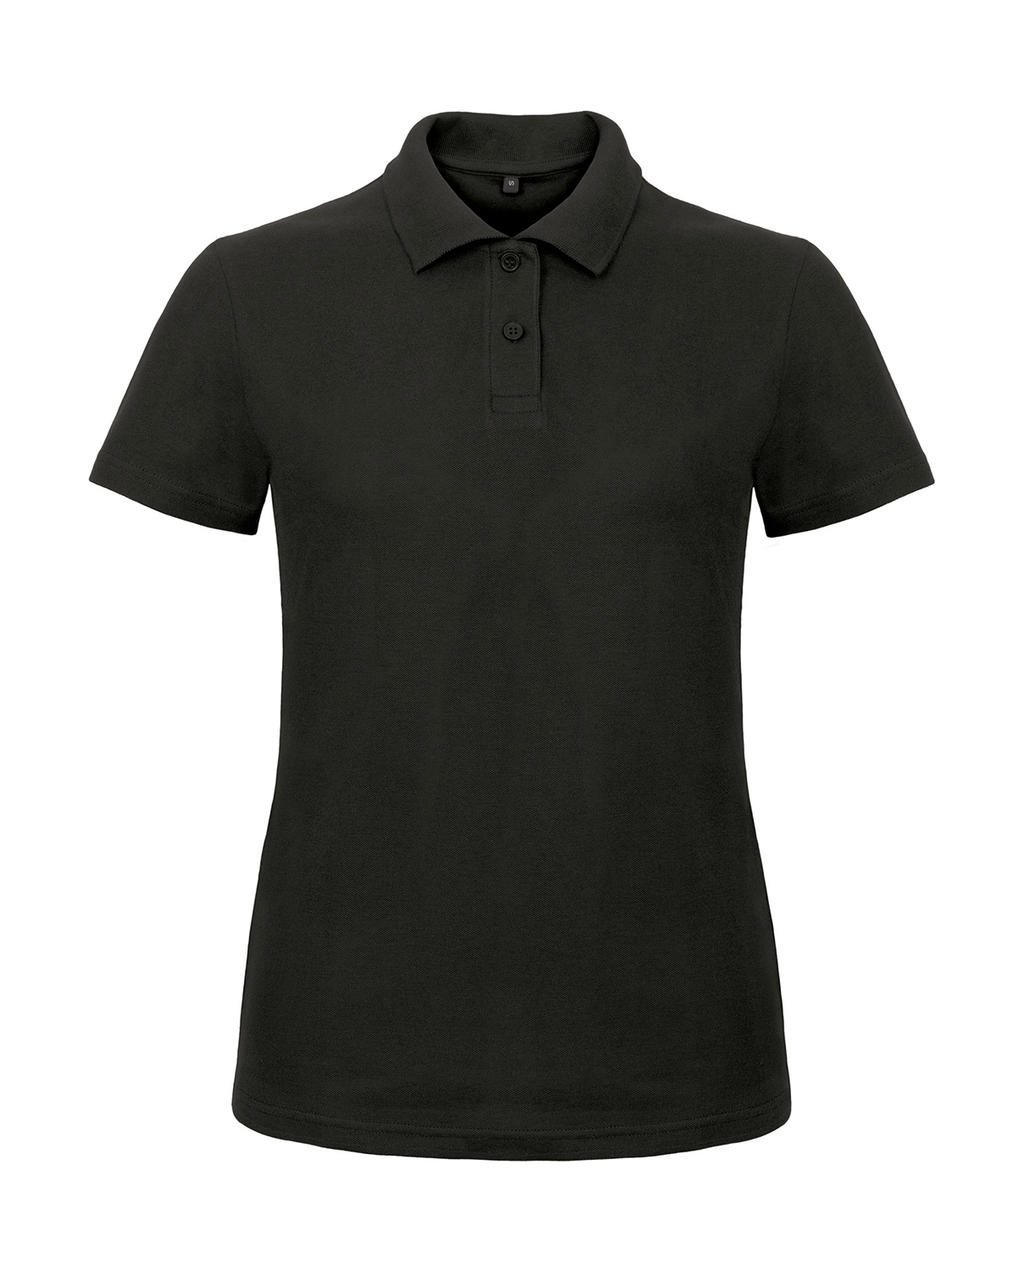 ID.001/women Piqué Polo Shirt zum Besticken und Bedrucken in der Farbe Black mit Ihren Logo, Schriftzug oder Motiv.